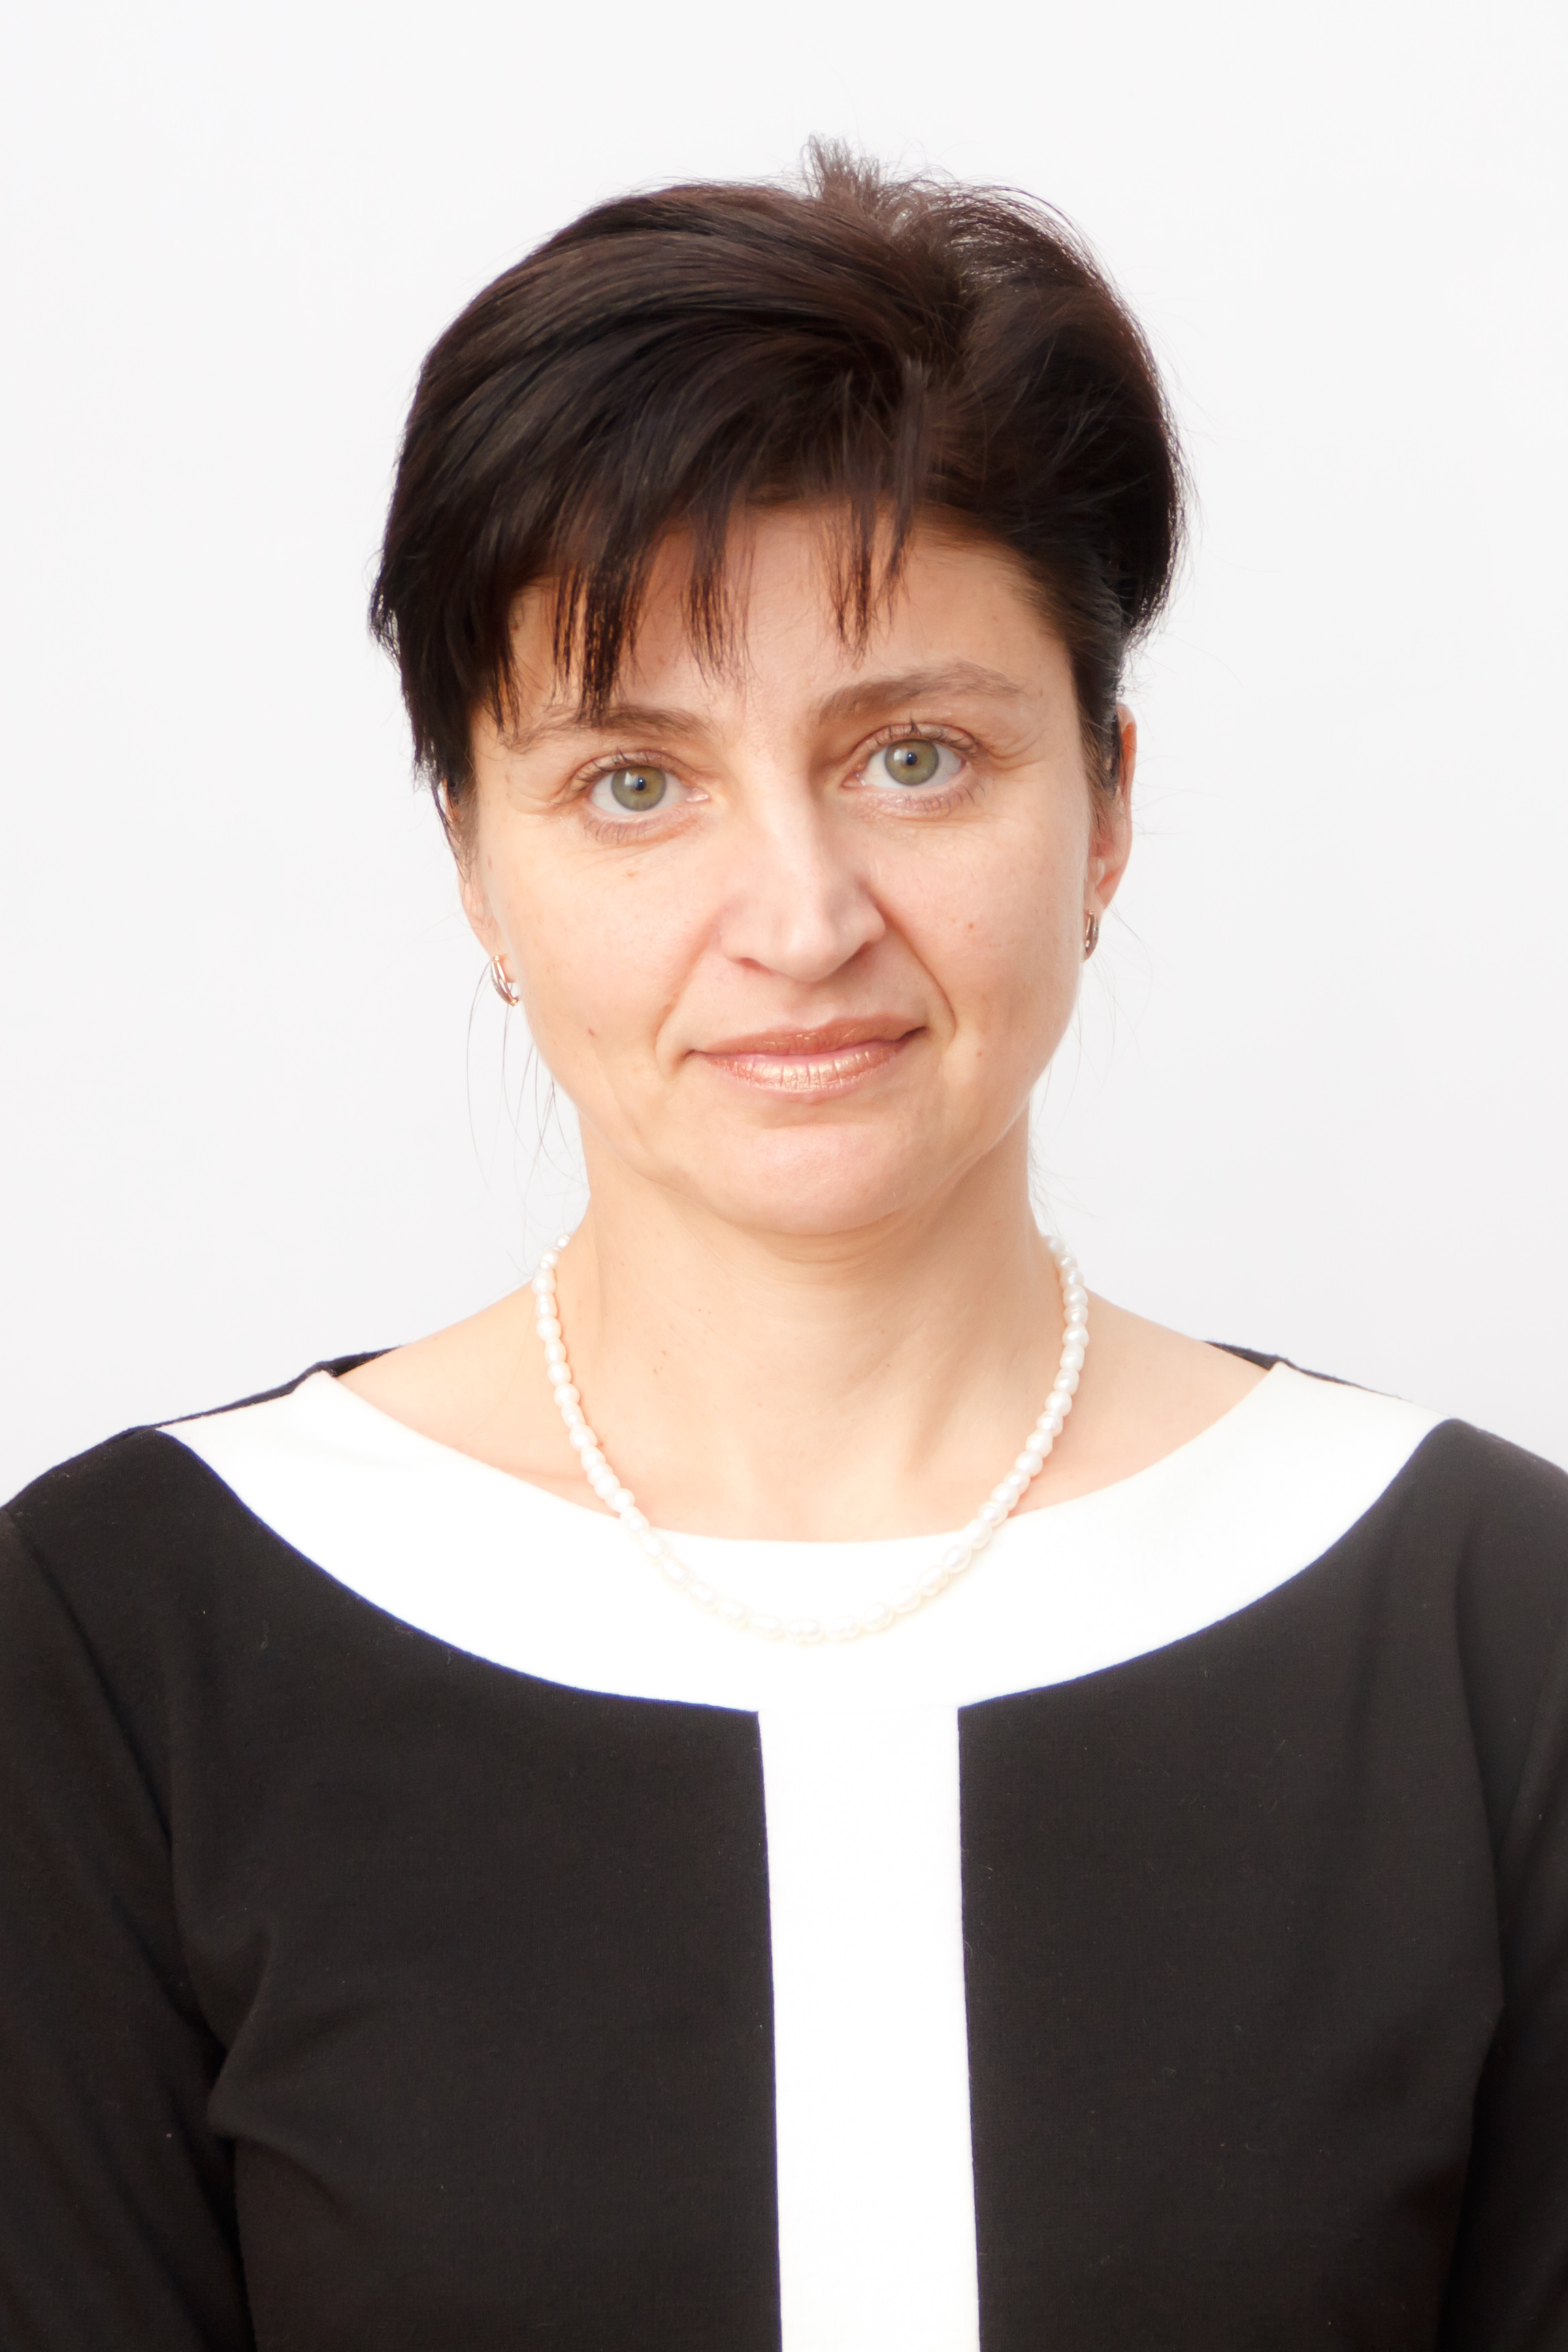  Maria Ivanivna Postoliuk